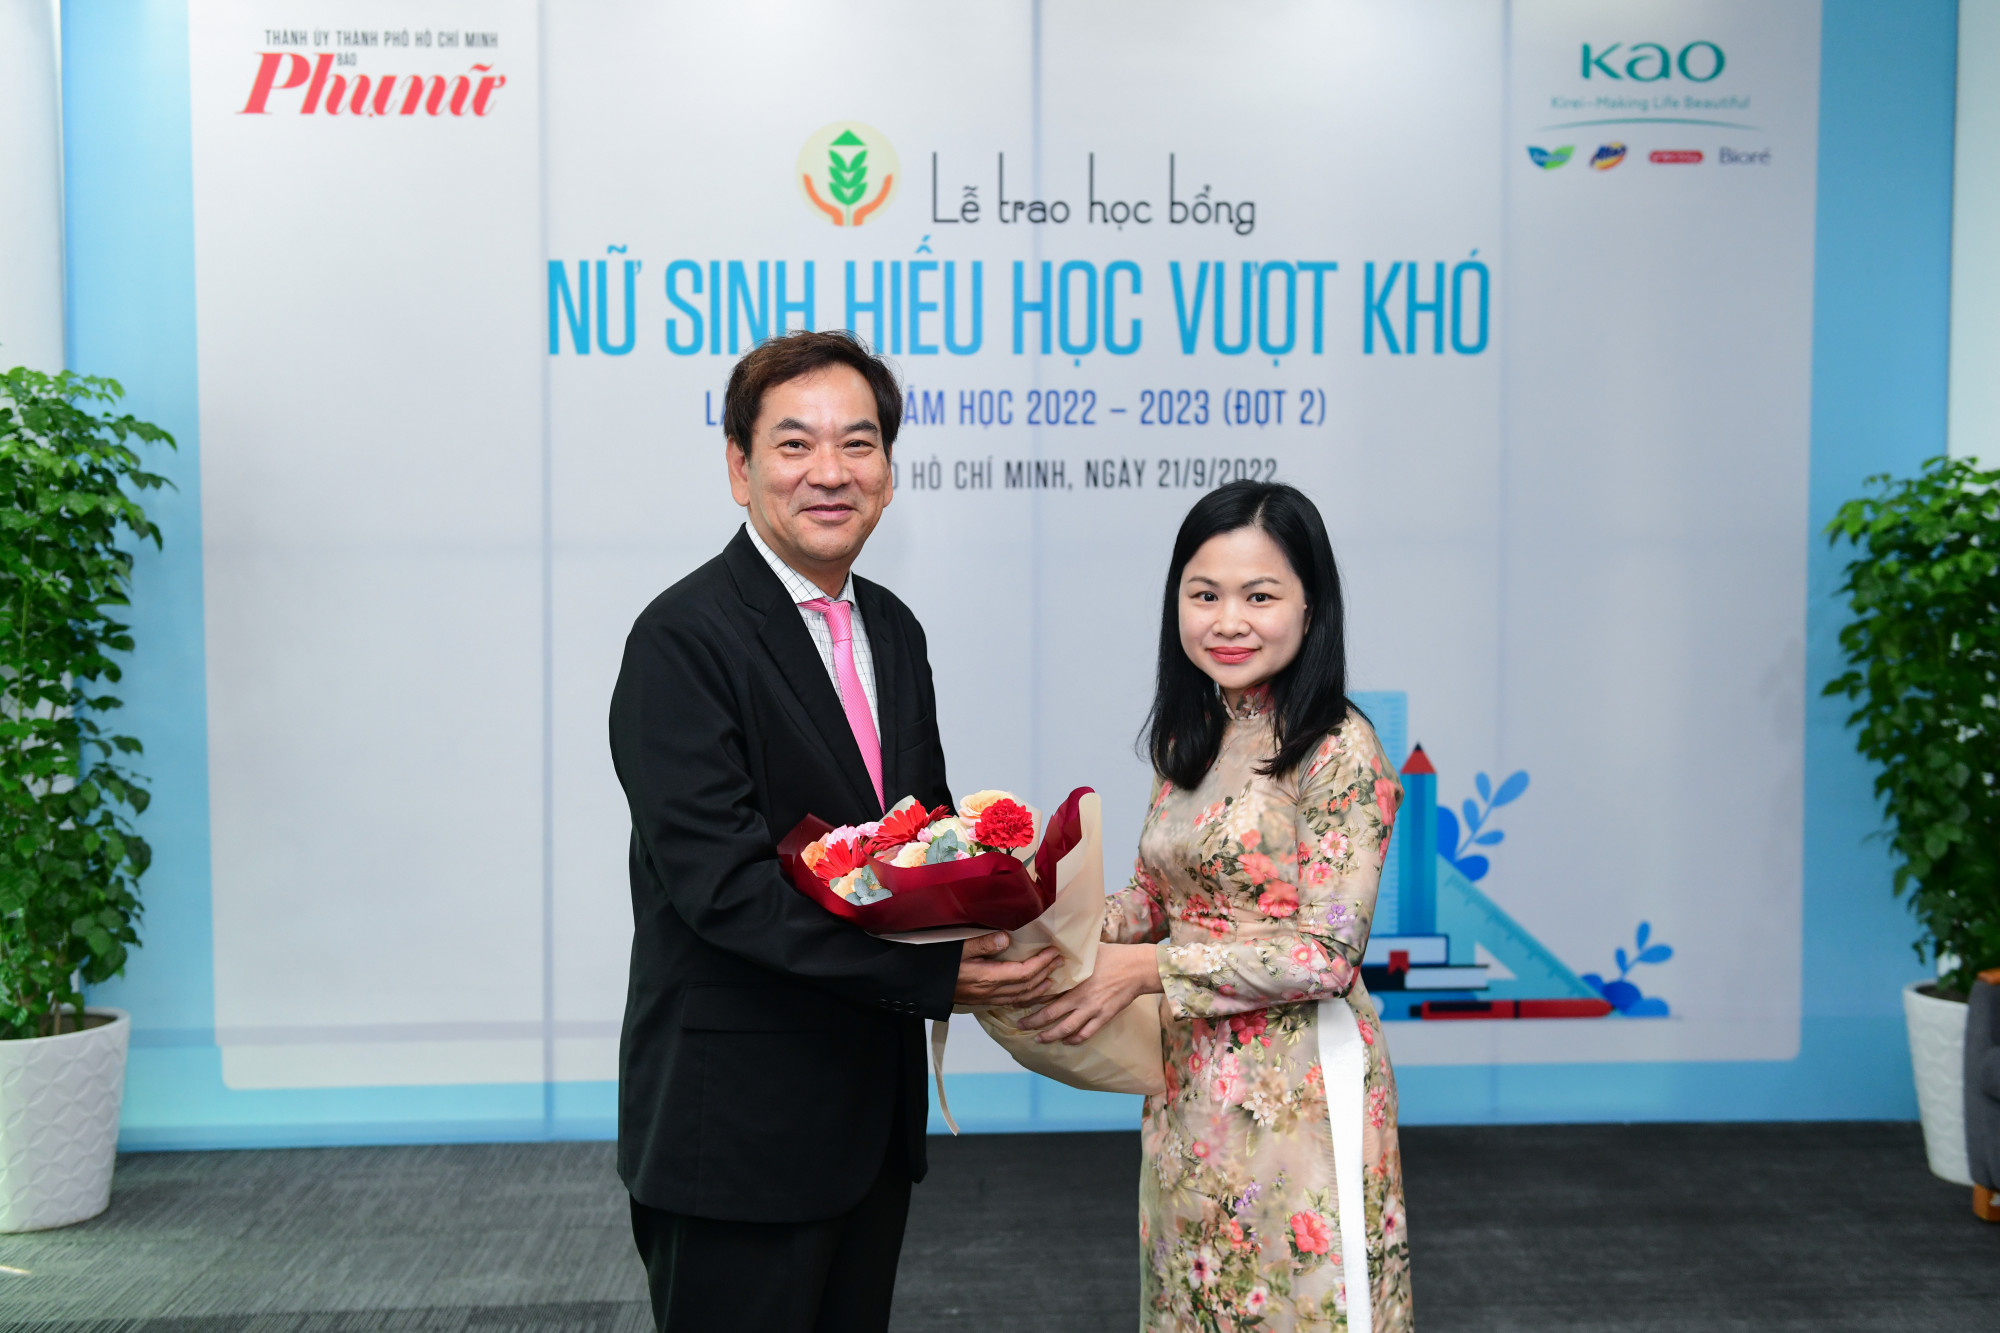 Bà Phạm Thị Vân Anh - Phó tổng biên tập Báo Phụ Nữ TPHCM tặng hoa cảm ơn ông Shoichi Hasegawa - Tổng giám đốc Công ty Kao Việt Nam